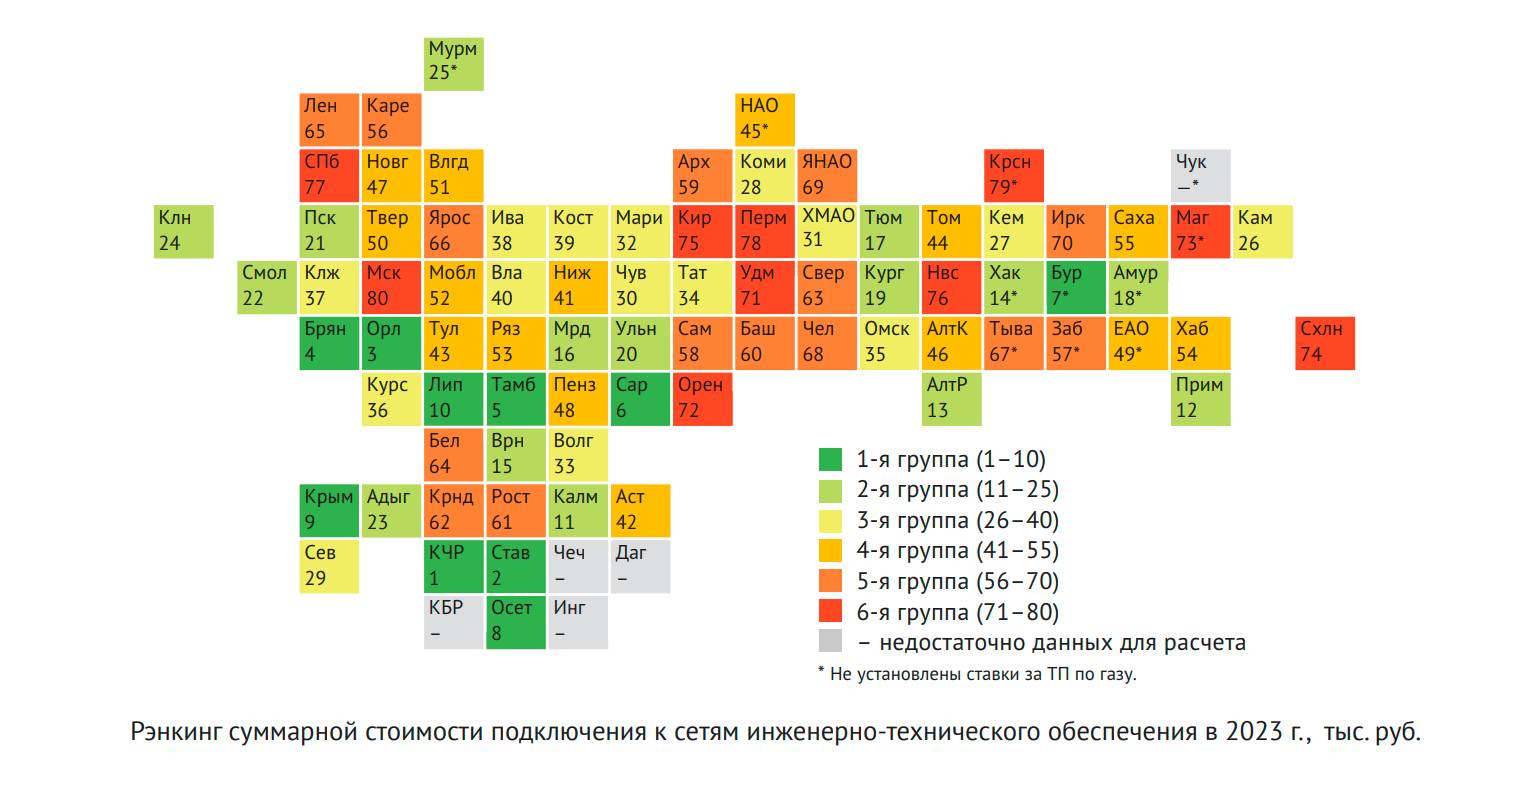 Новосибирск вошел в топ-10 рейтинга самых высоких цен на подключение к сетям